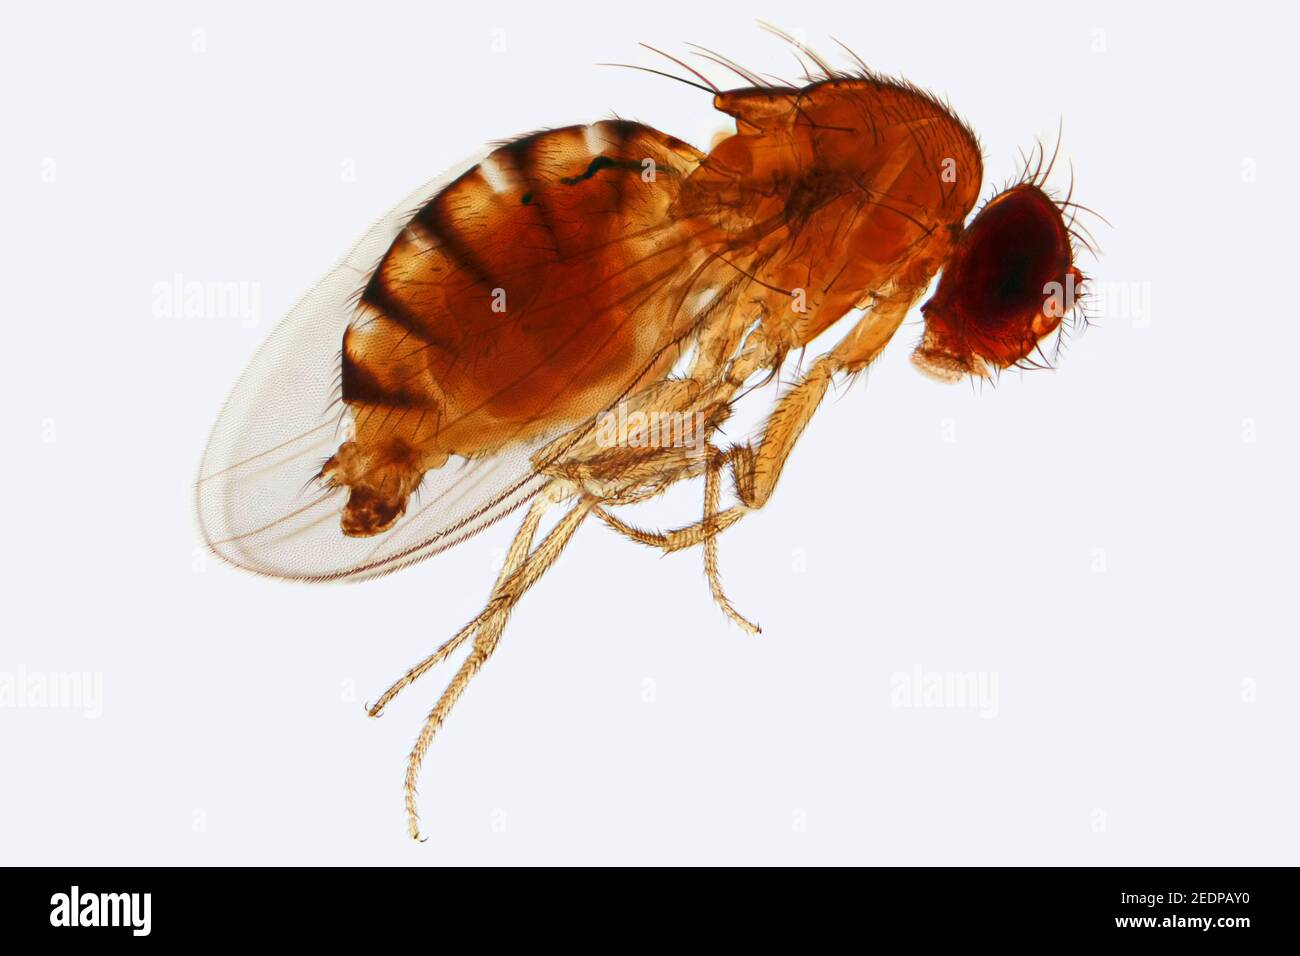 vinegar fly, fruit fly (Drosophila melanogaster), light microscopy Stock Photo